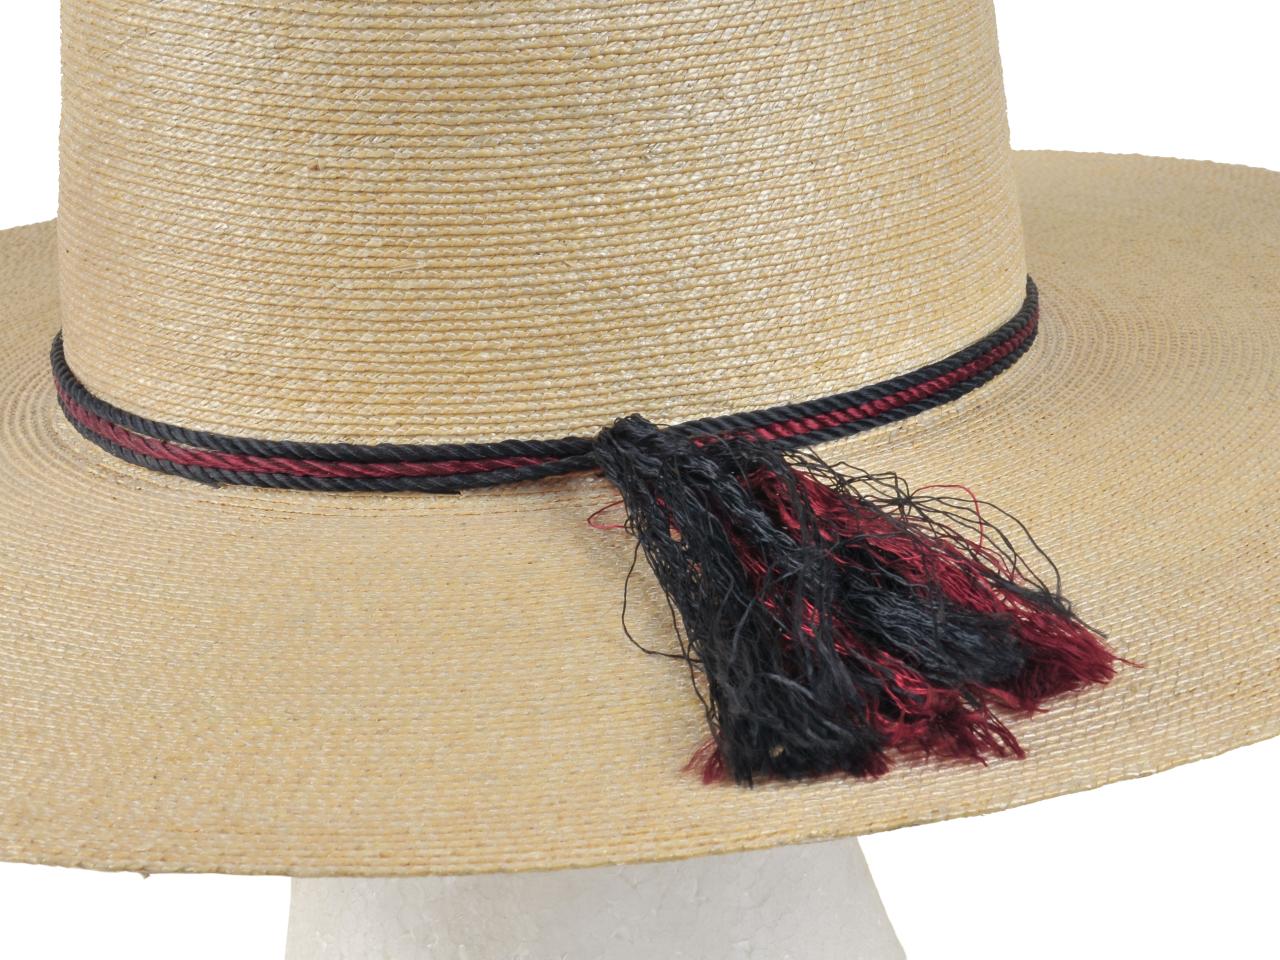 Detalle de sombrero de huaso, tejido en paja teatina natural